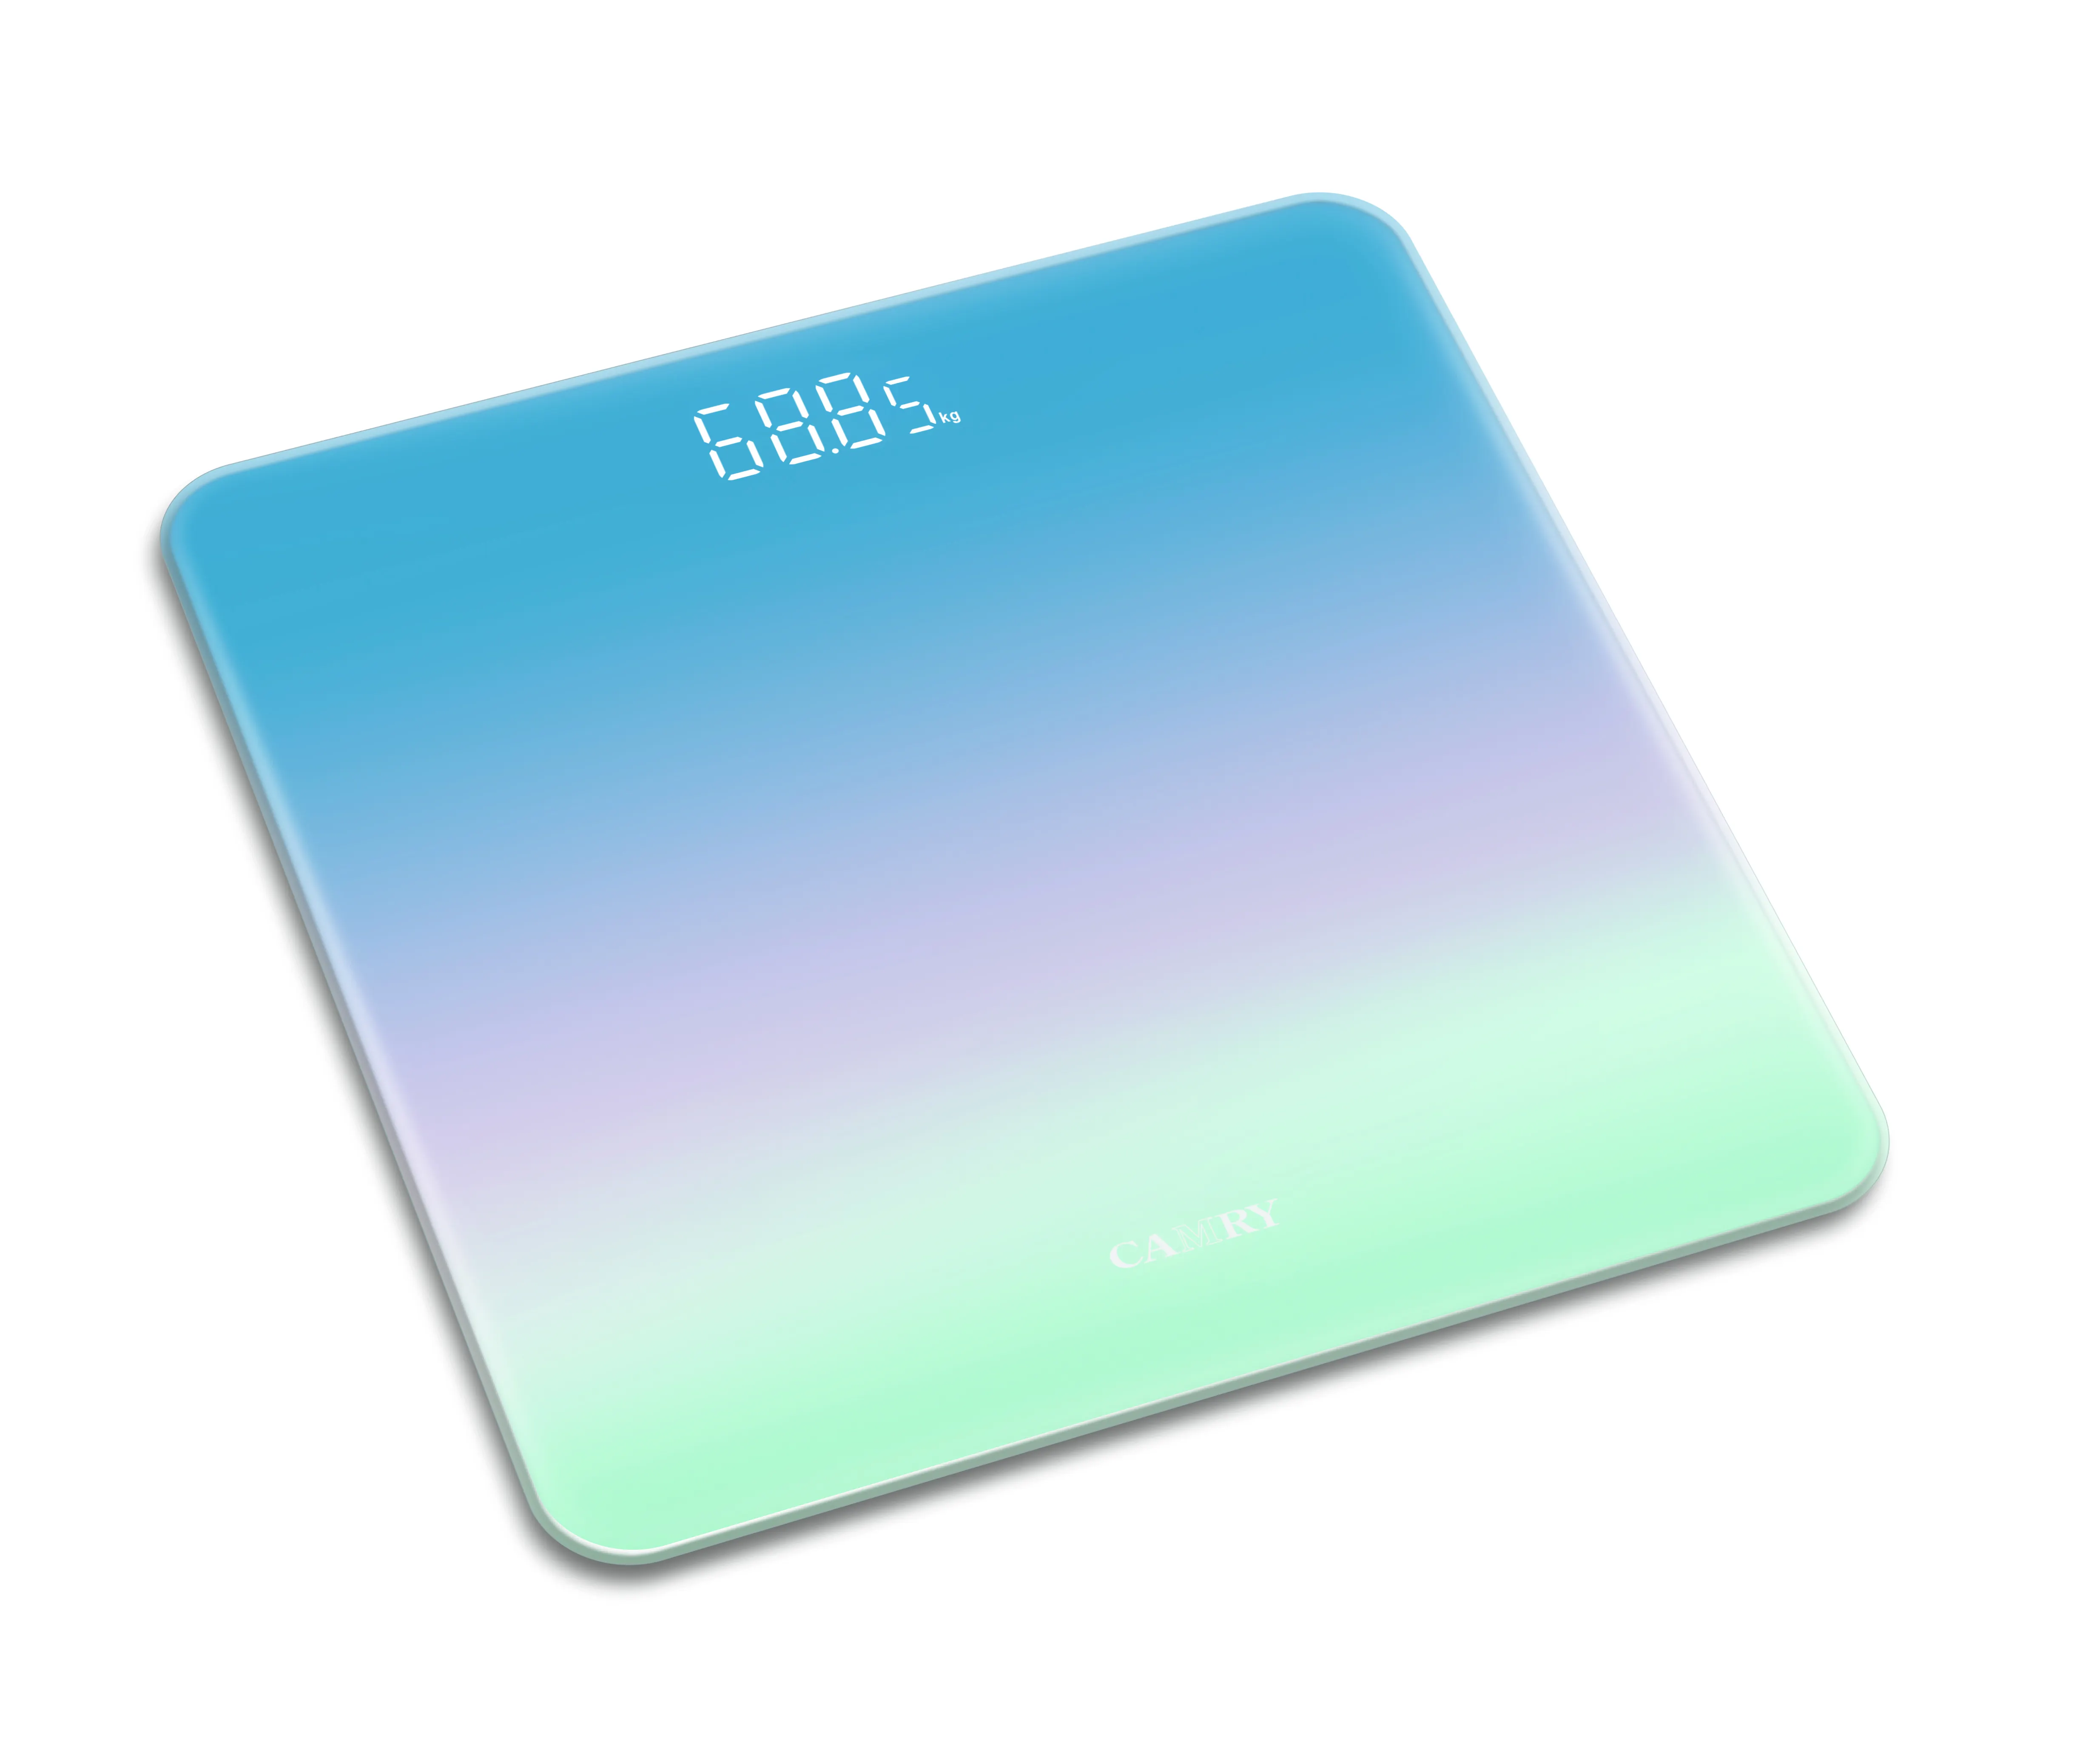 चमकदार रंग डिज़ाइन बॉडी वेइंग स्केल मैजिक एलईडी डिस्प्ले 0.01 किग्रा व्यक्तिगत बैलेंस 180 किग्रा/400 पाउंड डिजिटल बाथरूम स्केल